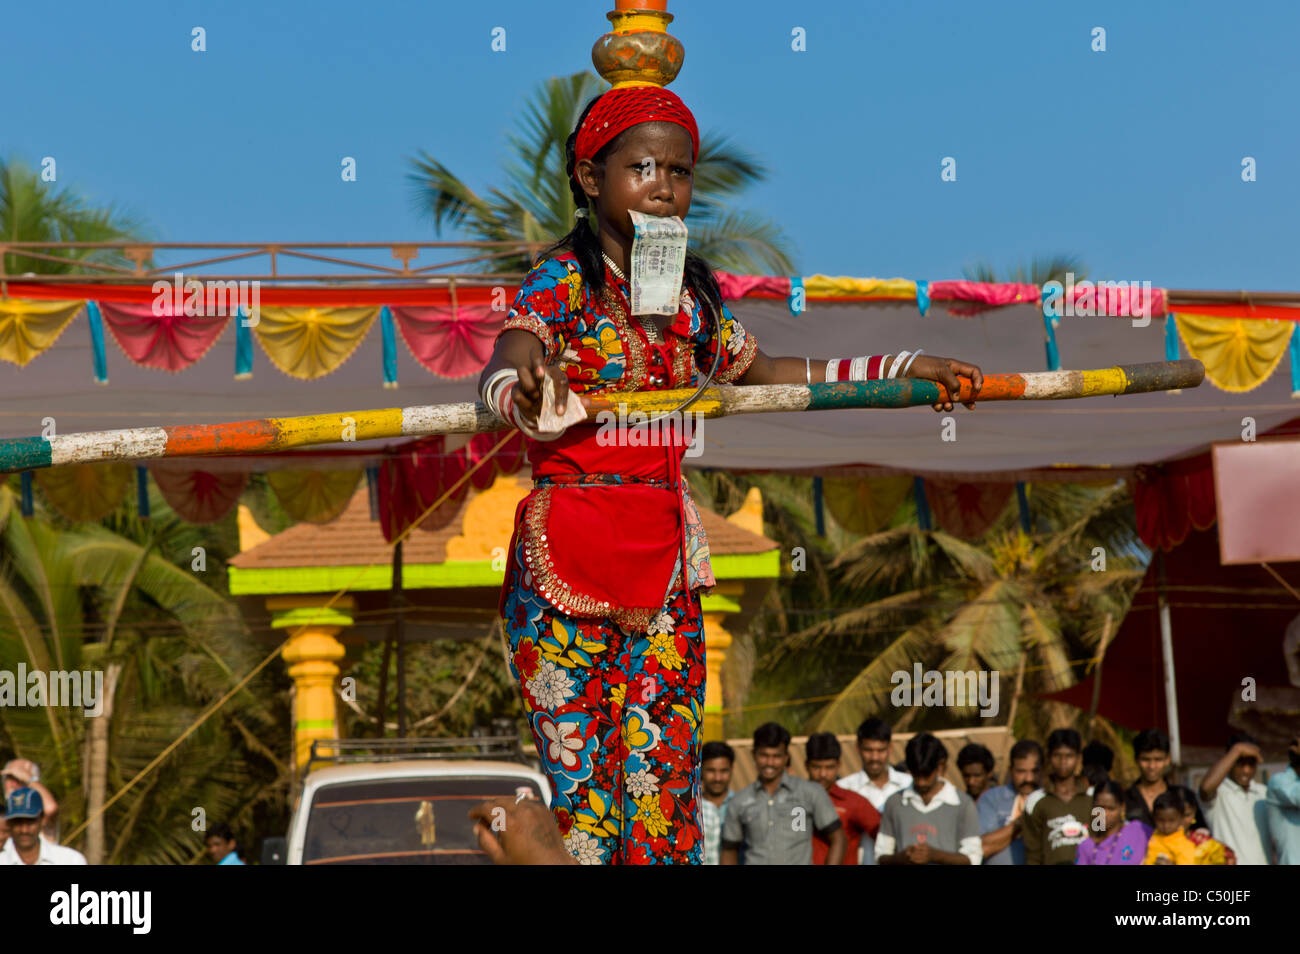 Un bambino acrobat passeggiate sulla fune al festival Shivaratra in Gokarna, India. Foto Stock